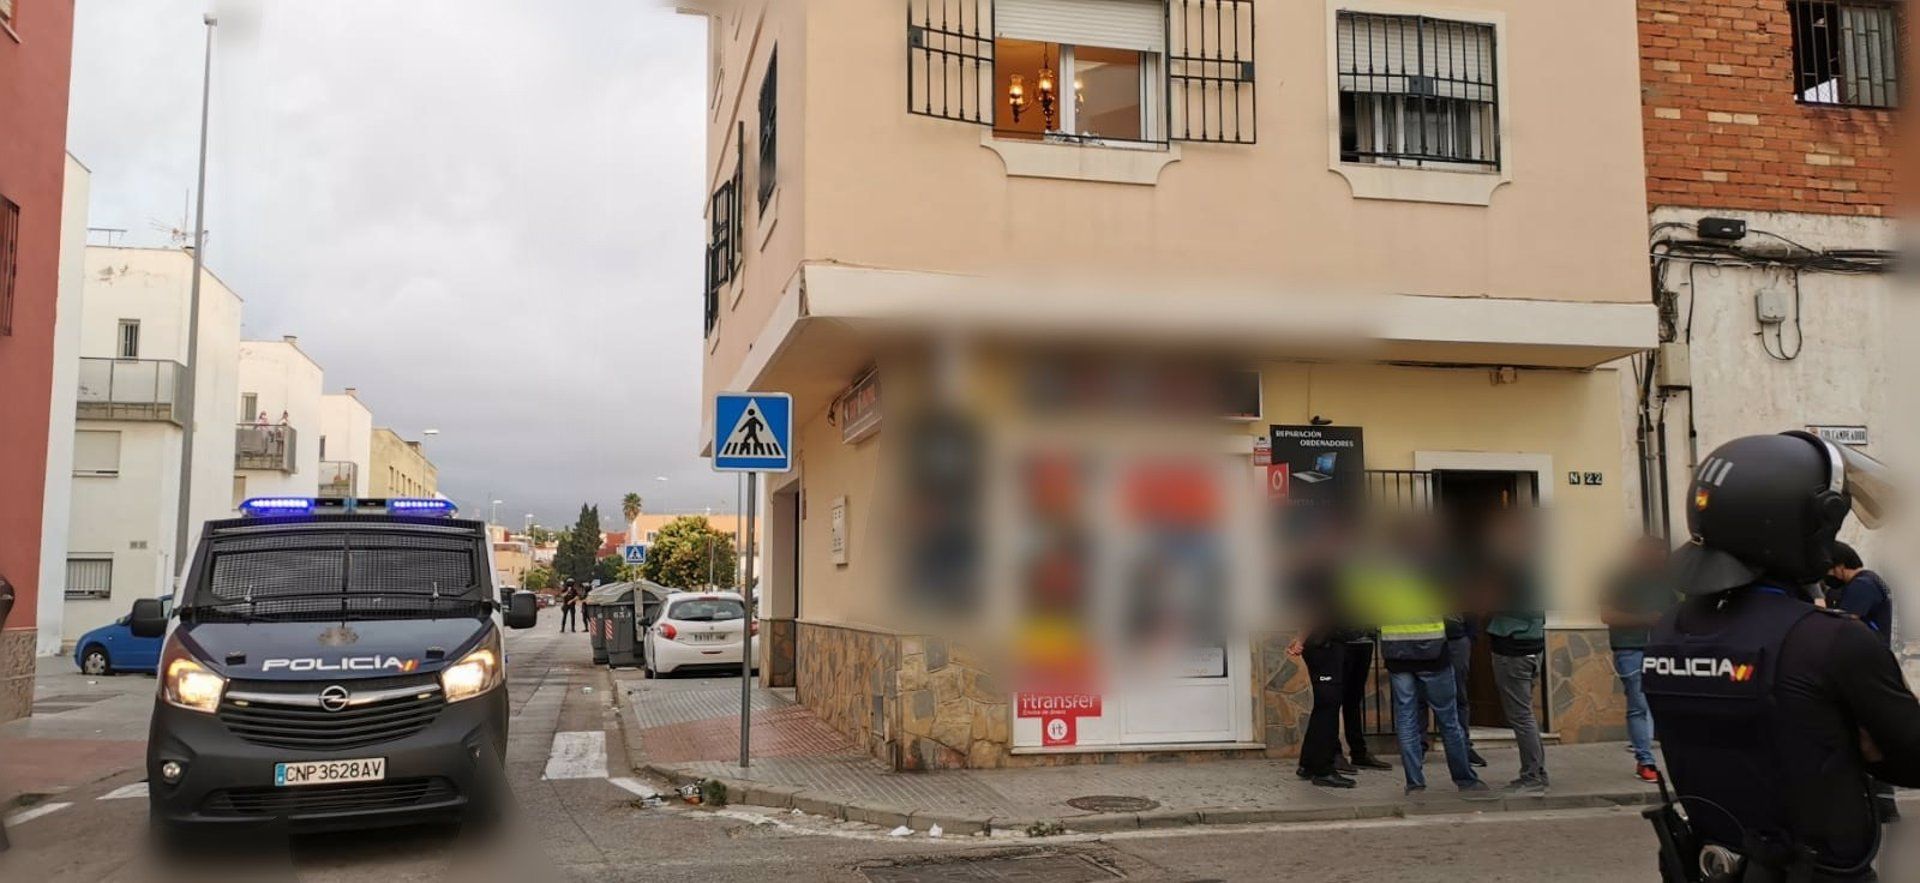 Agentes de la Policía Nacional, tras una intervención en un supermercado en Algeciras.